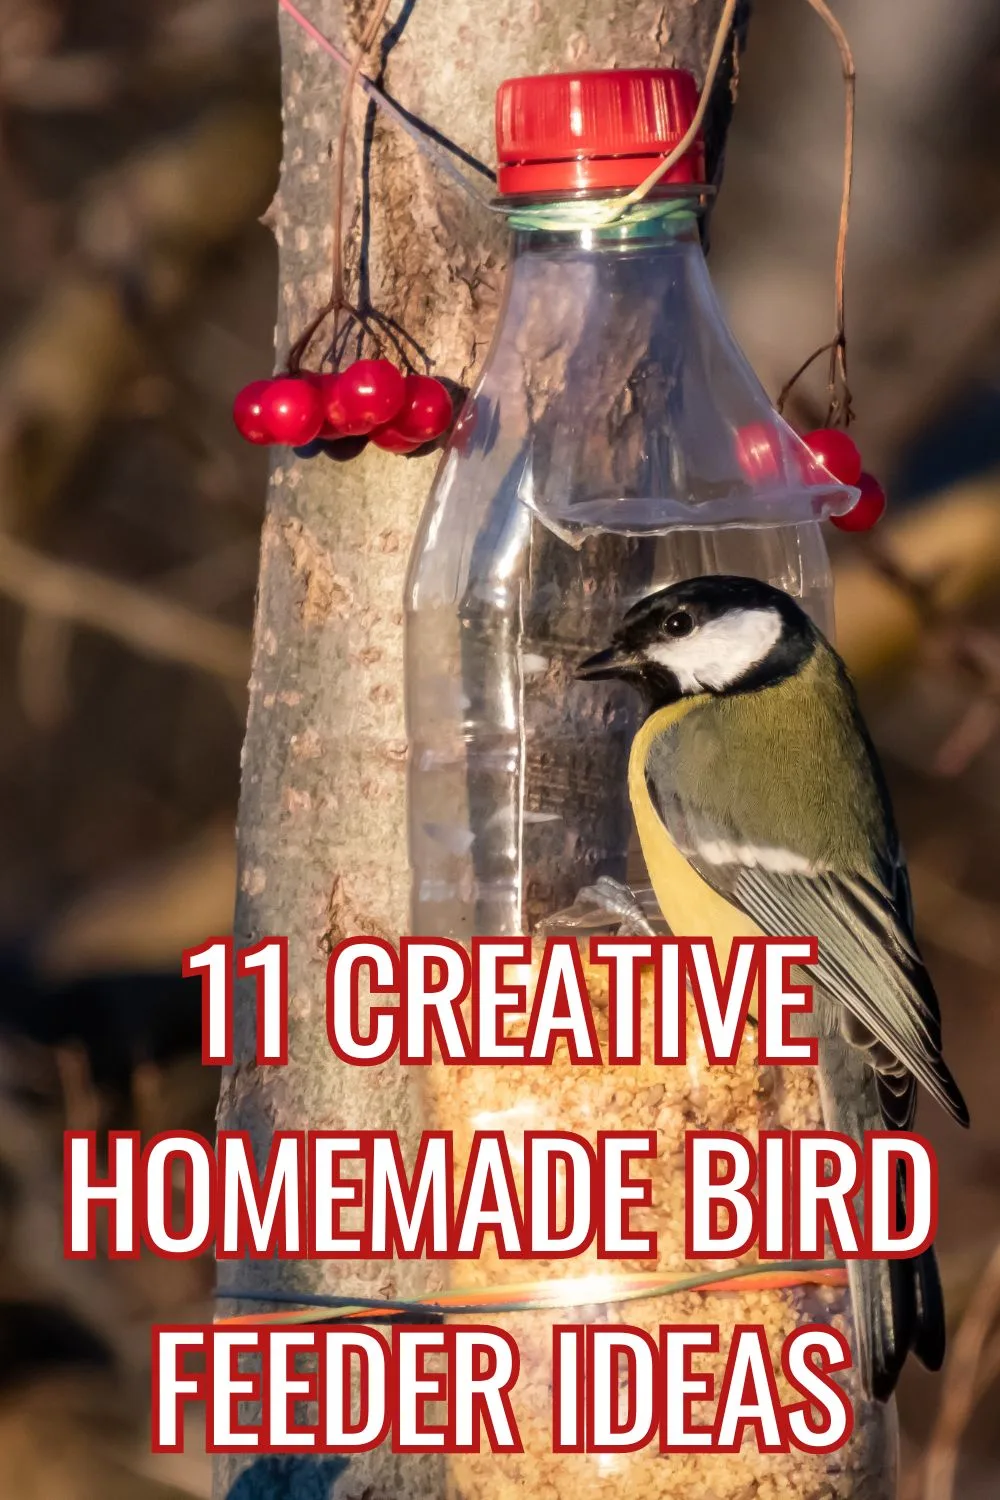 11 creative homemade bird feeder ideas.